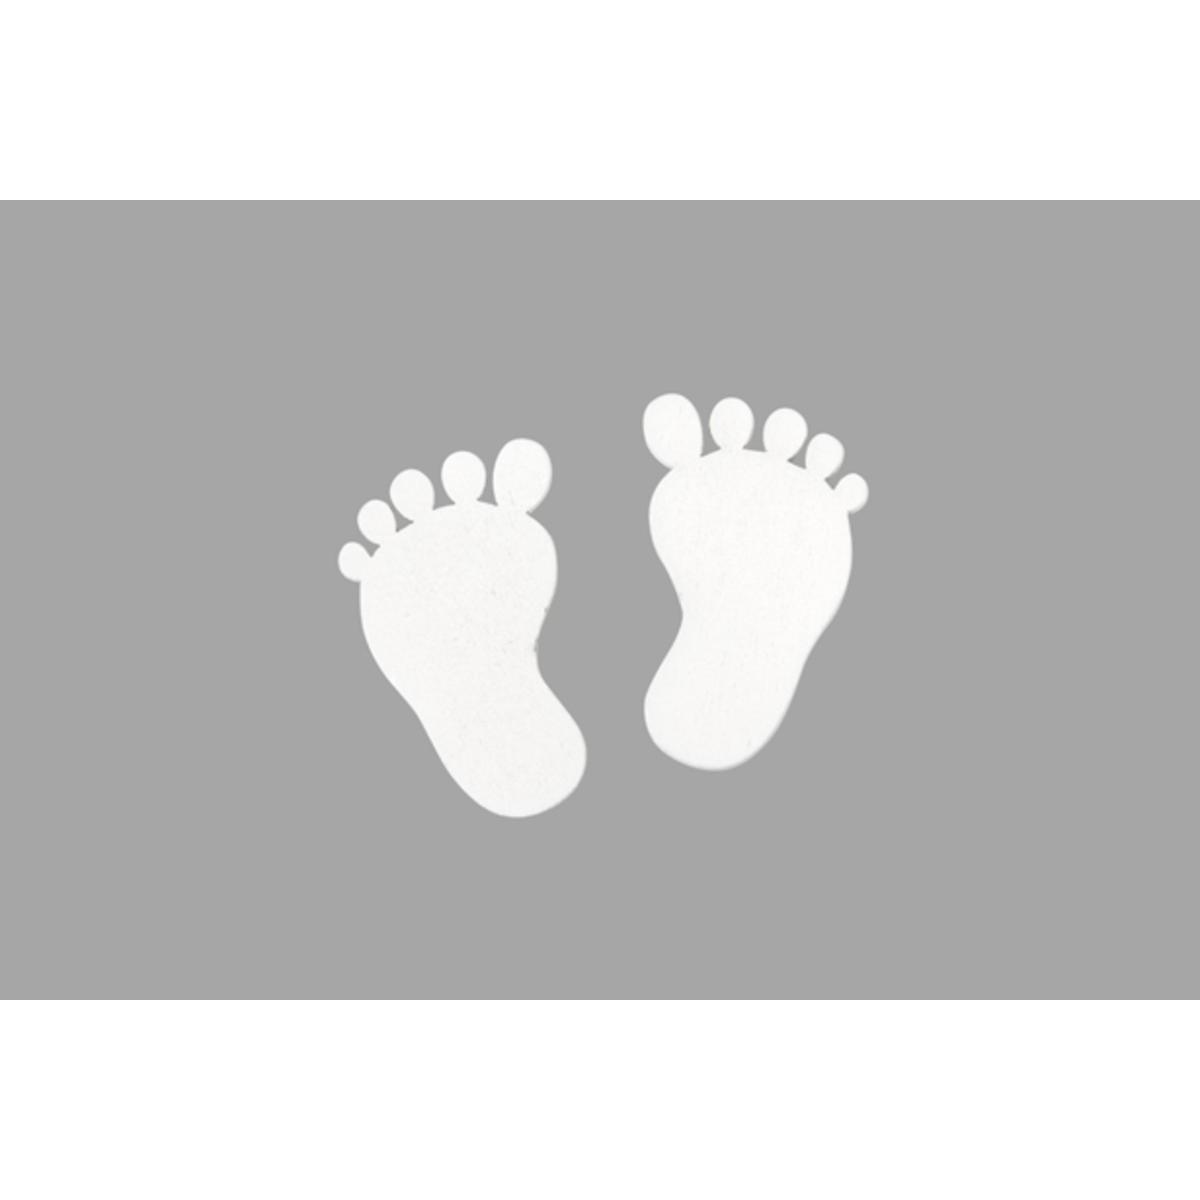 Pieds bébé bois (x 10) - 2.5 x 4 cm - Blanc